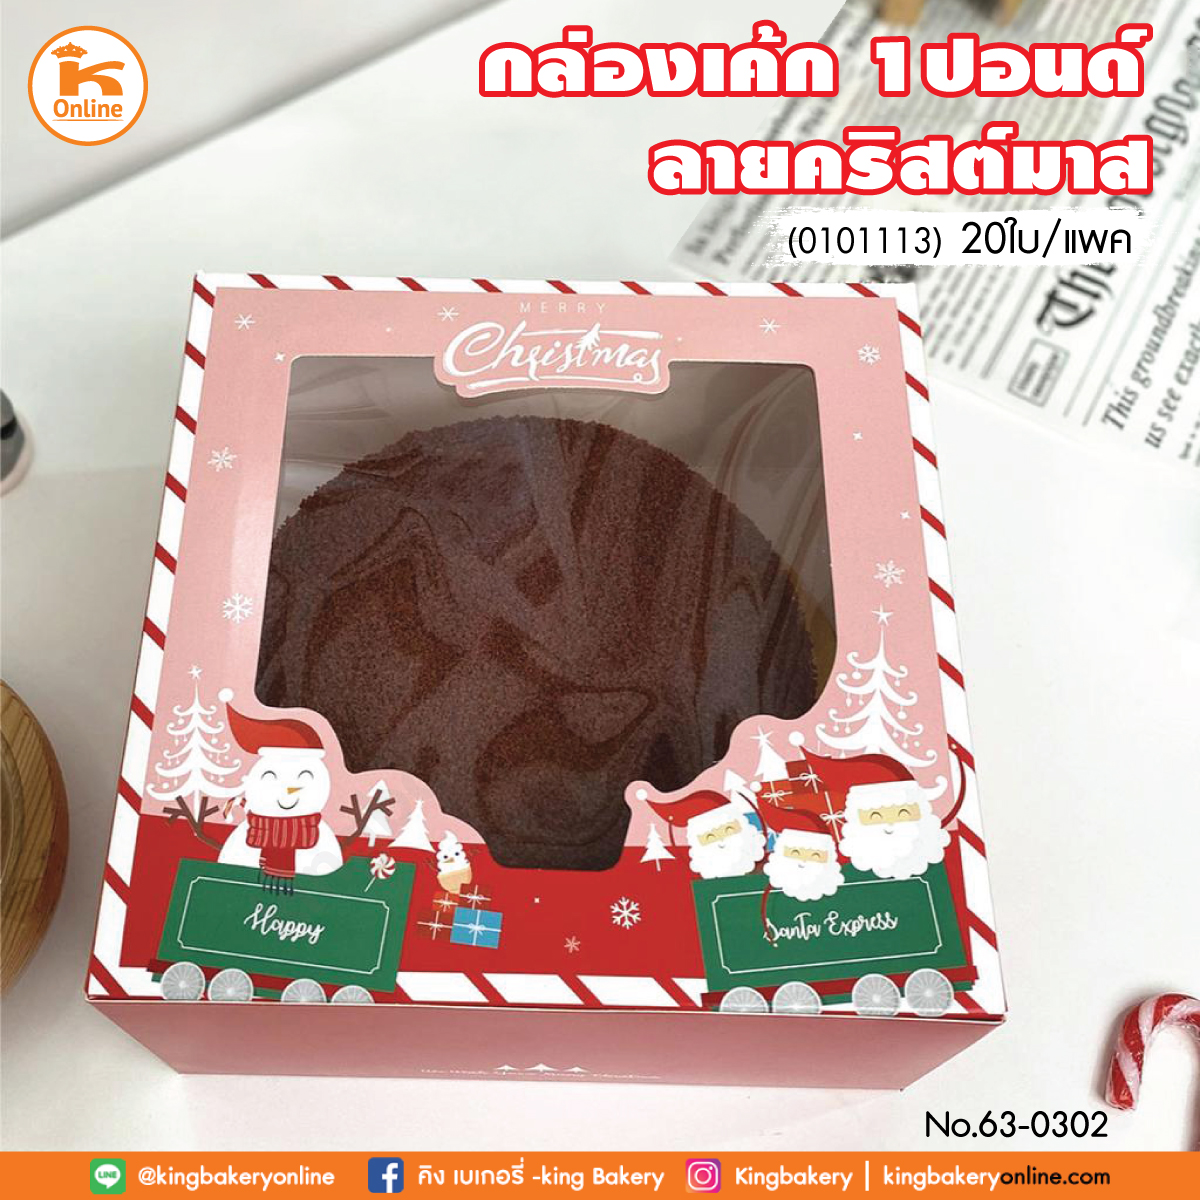 กล่องเค้ก 1 ปอนด์ ลายคริสต์มาส (0101113) (แพคx20ใบ)